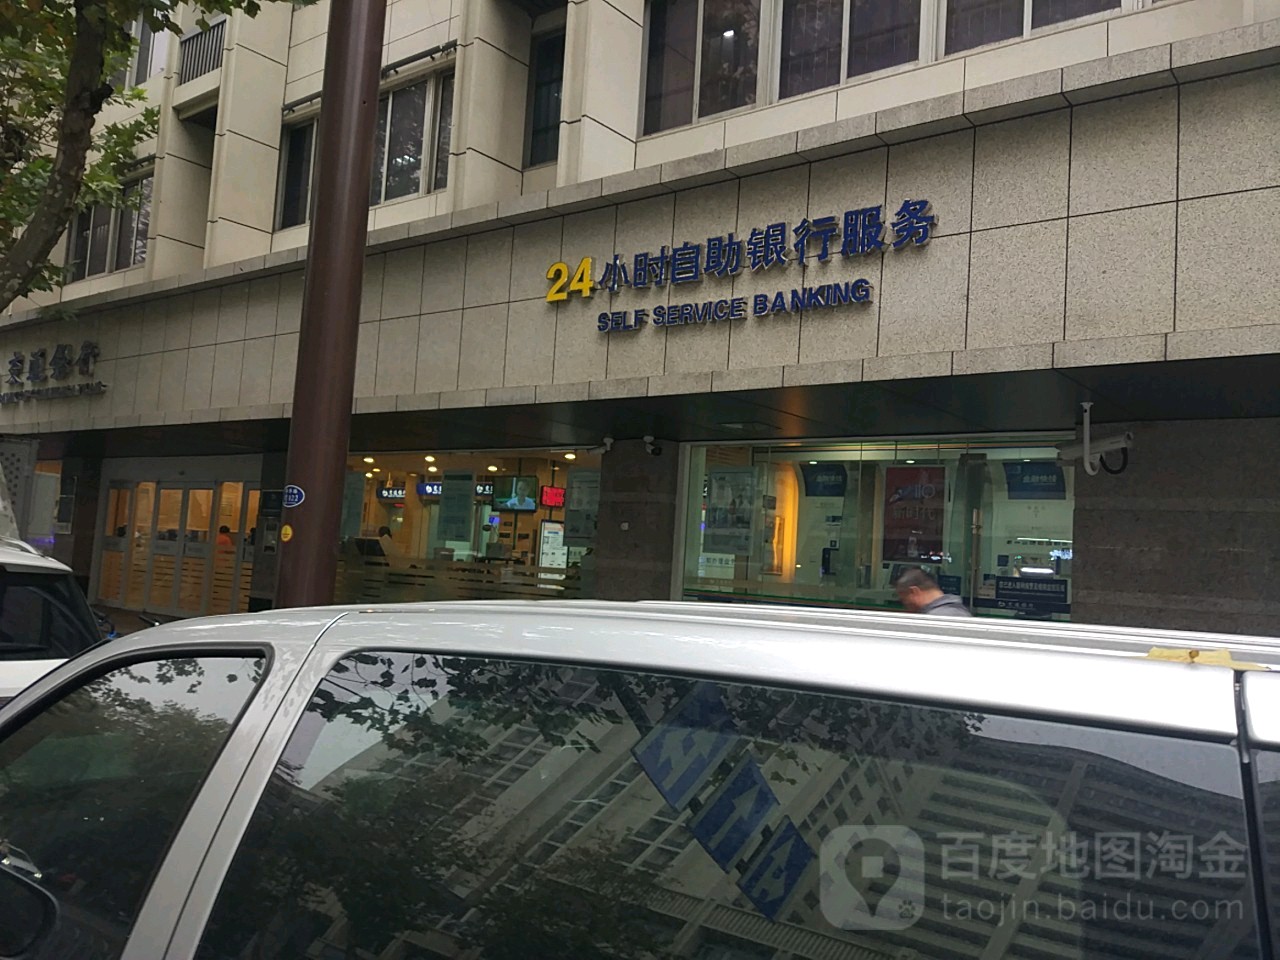 交通銀行24小時自助銀行(南京華僑路支行)